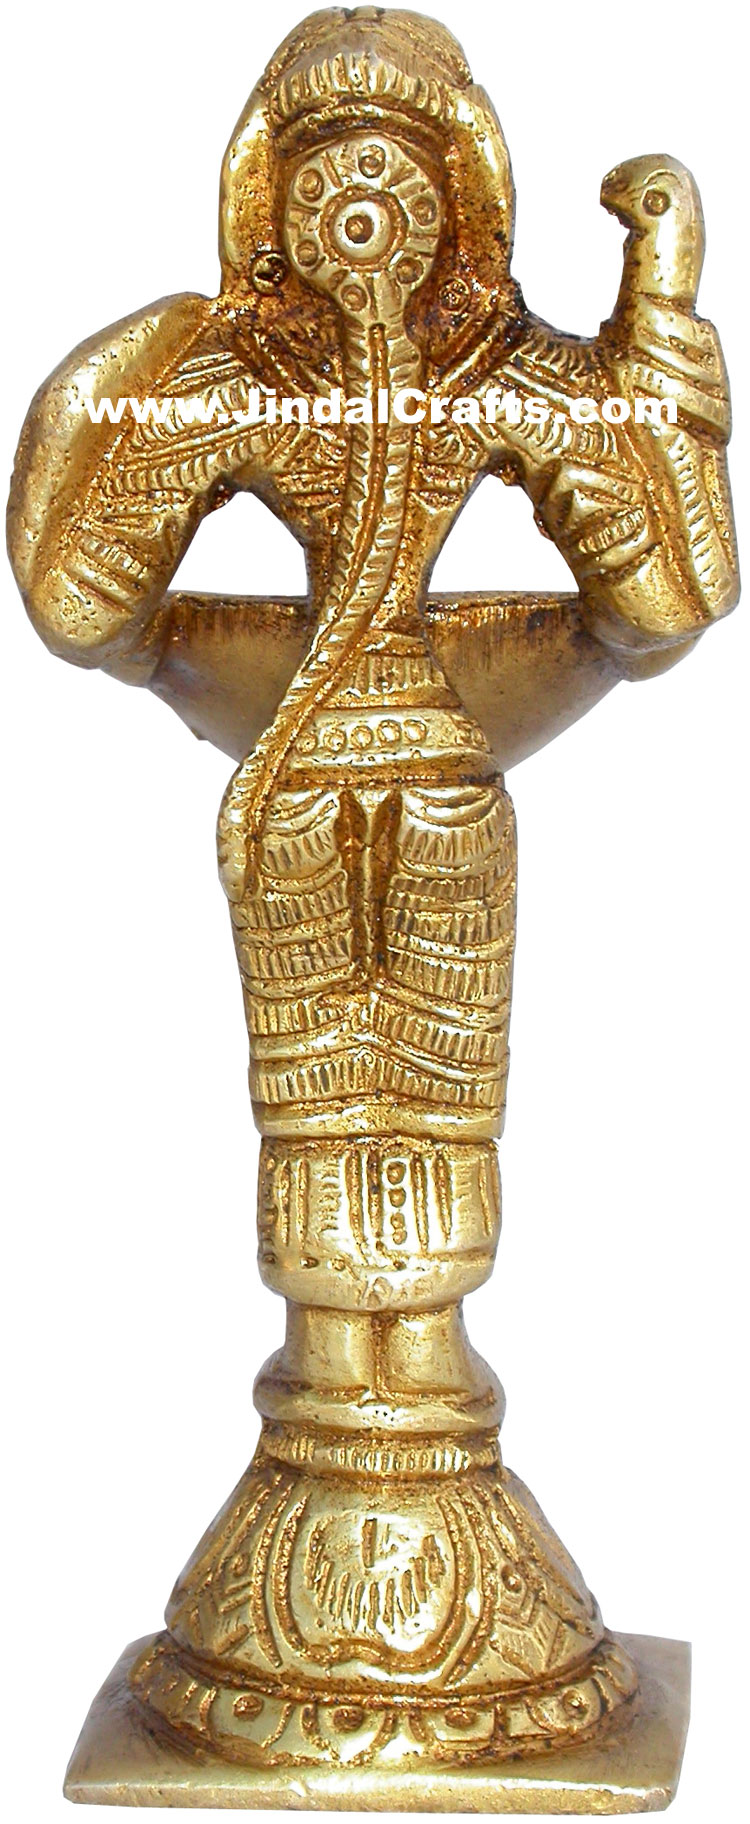 Handmade Brass Oil Lamp Home Decor Artifact Indian Handicrafts Crafts Arts